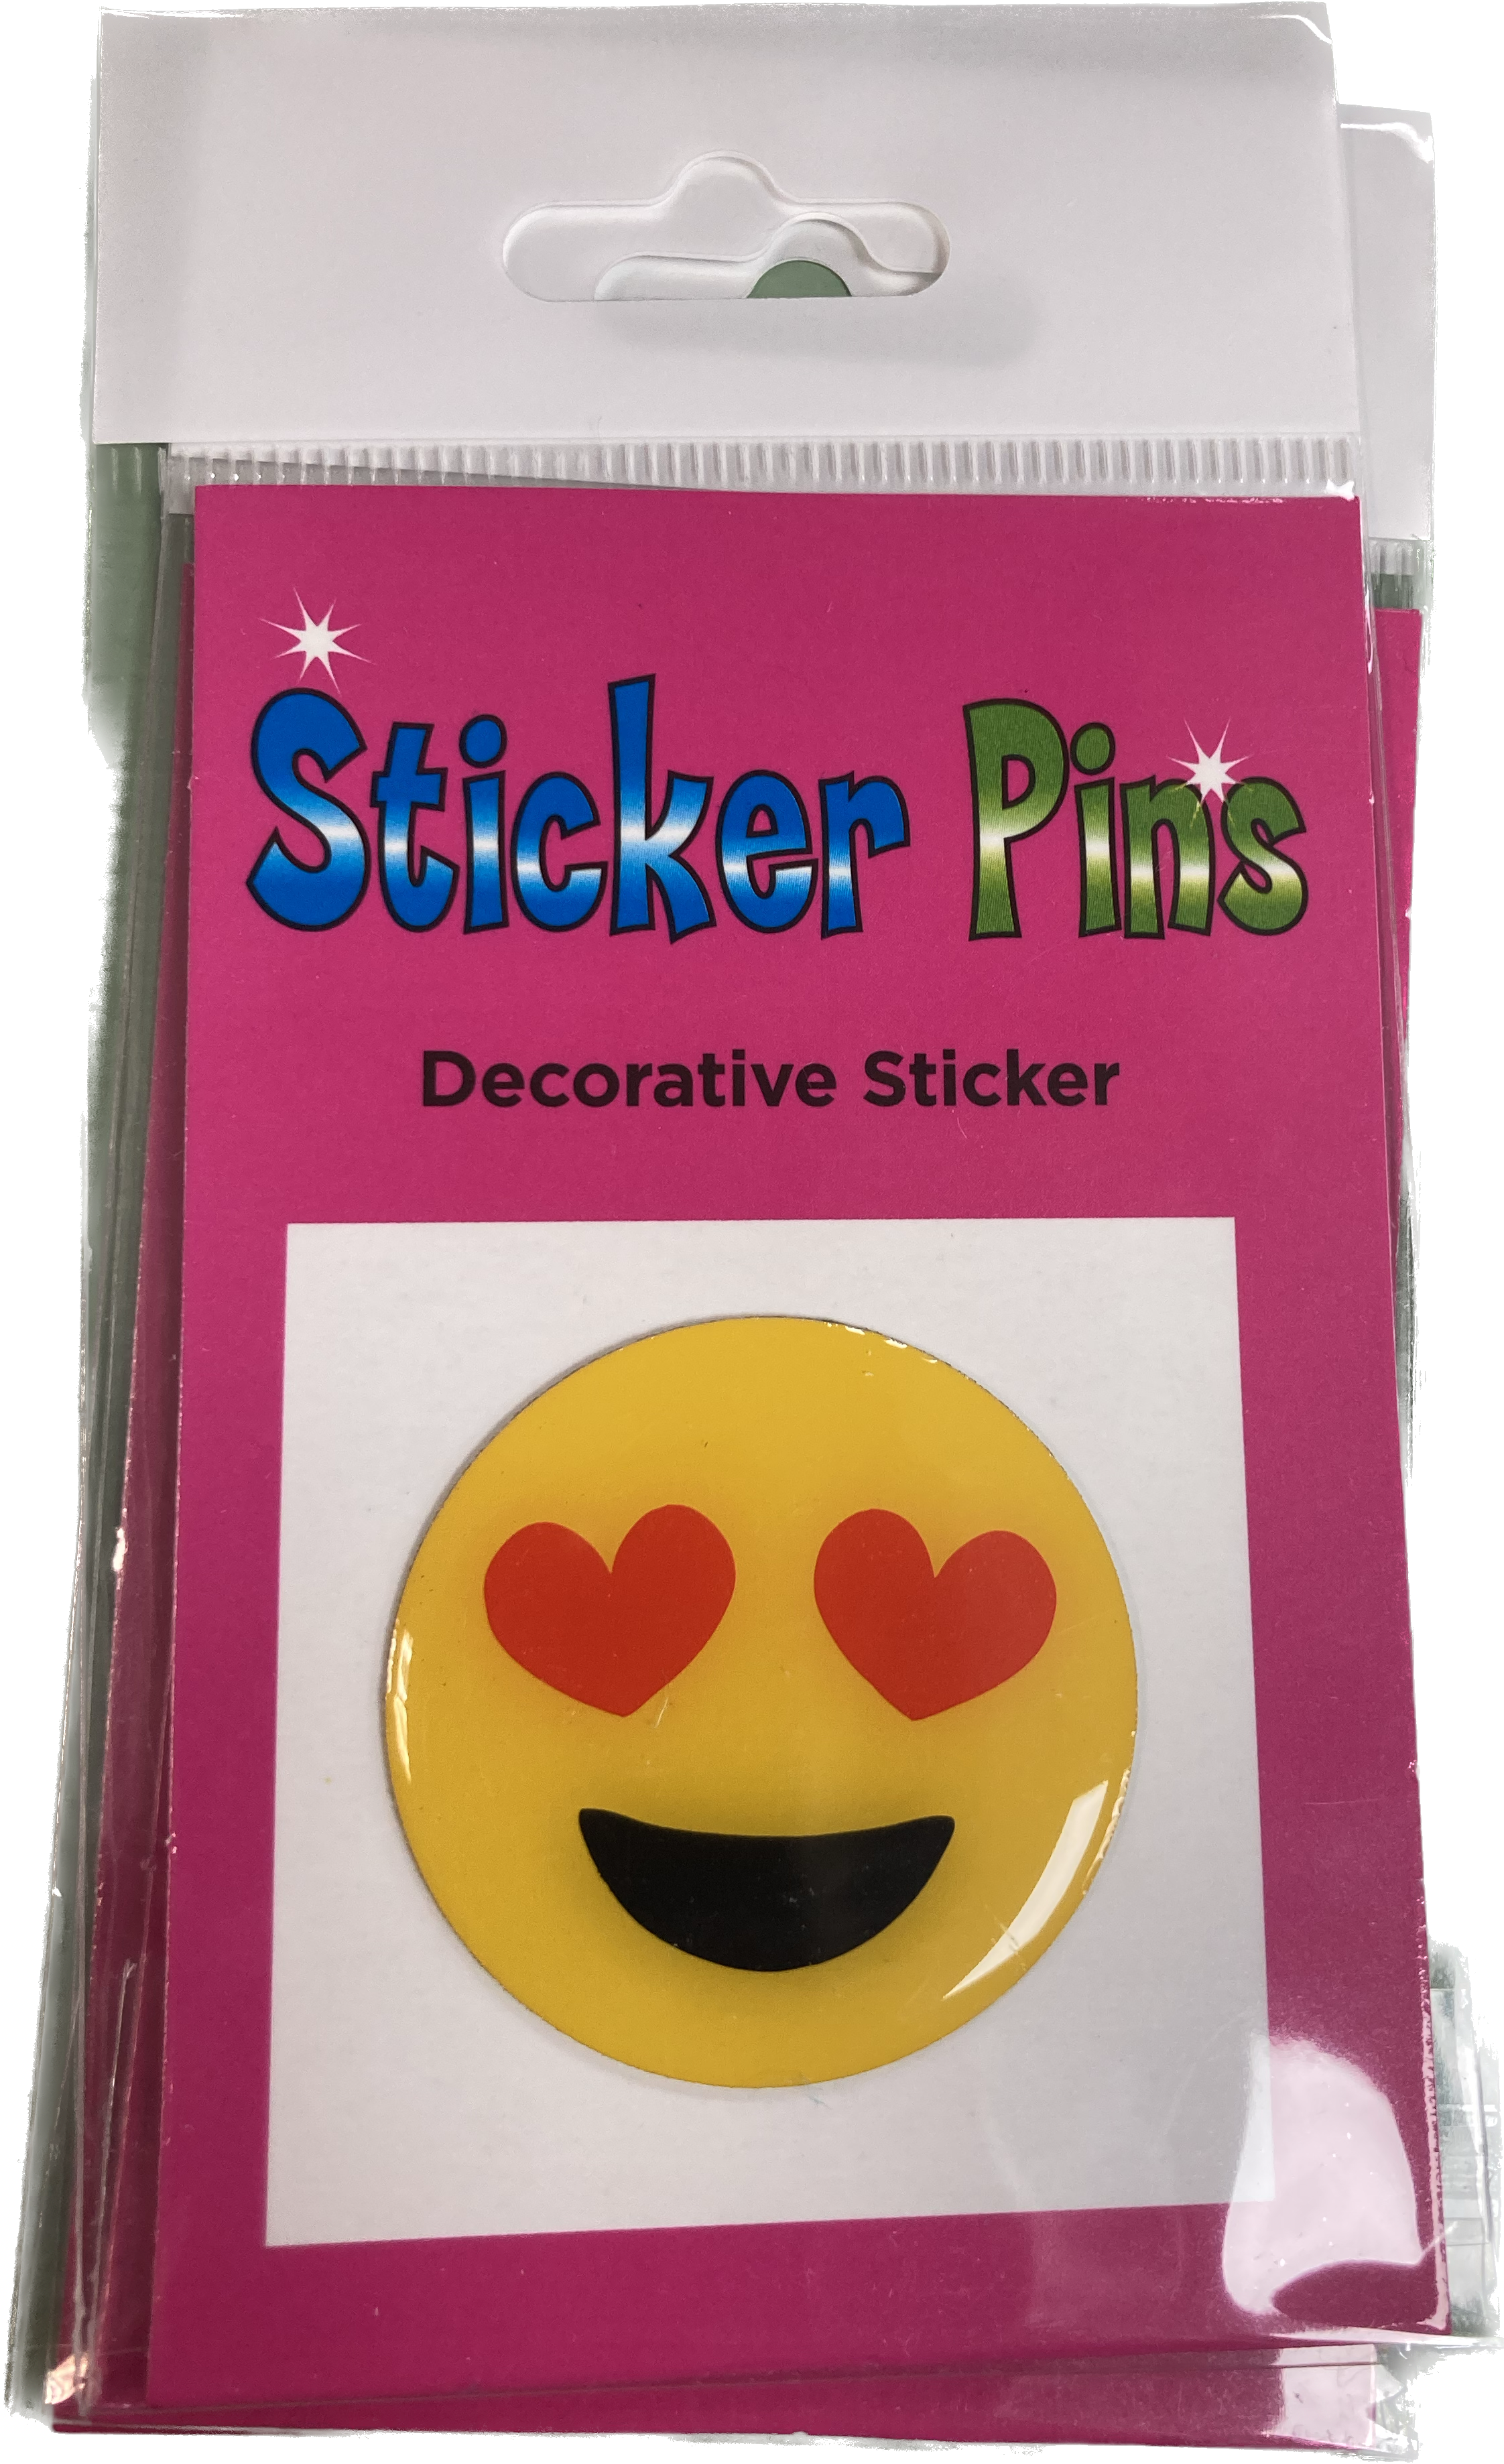 Sticker Pins (Decorative Sticker)